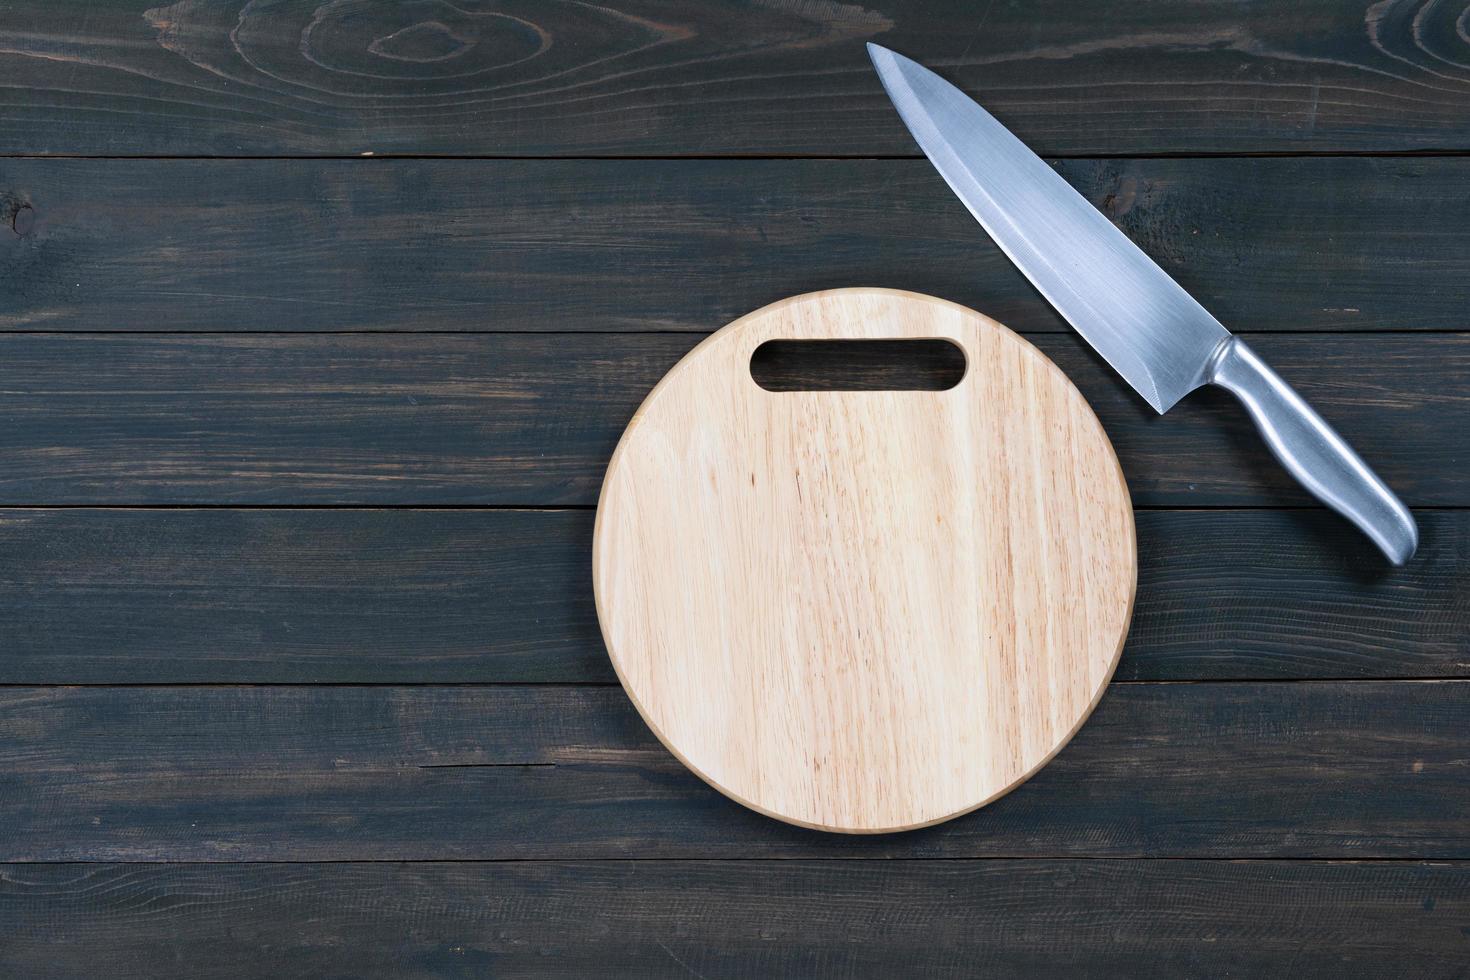 couteau de cuisine et planche à découper vide ronde en bois photo